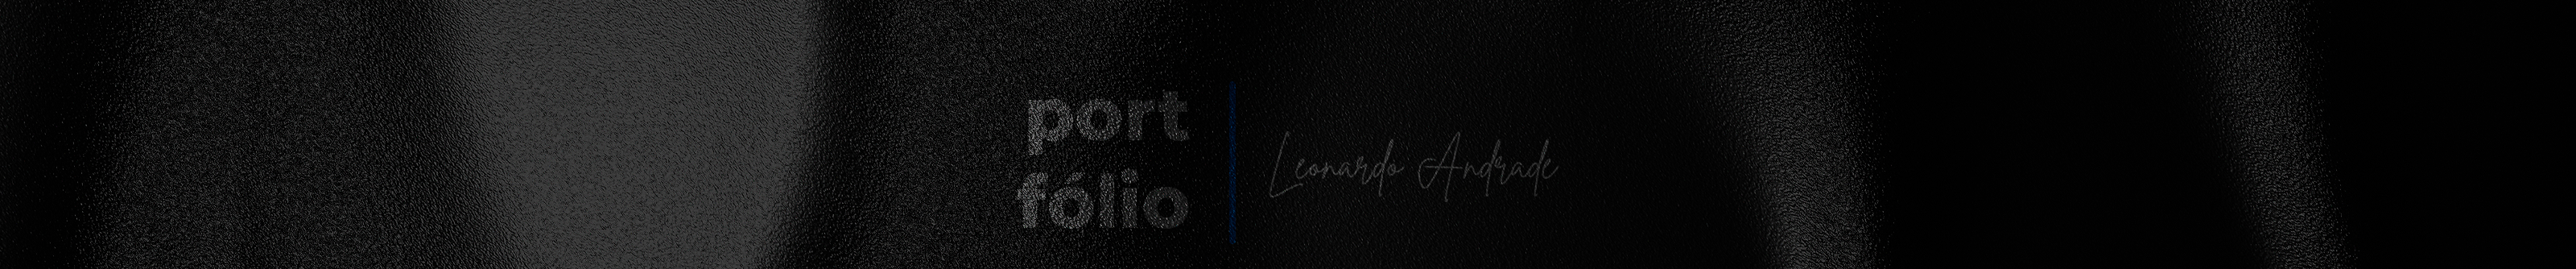 Leonardo Andrade's profile banner